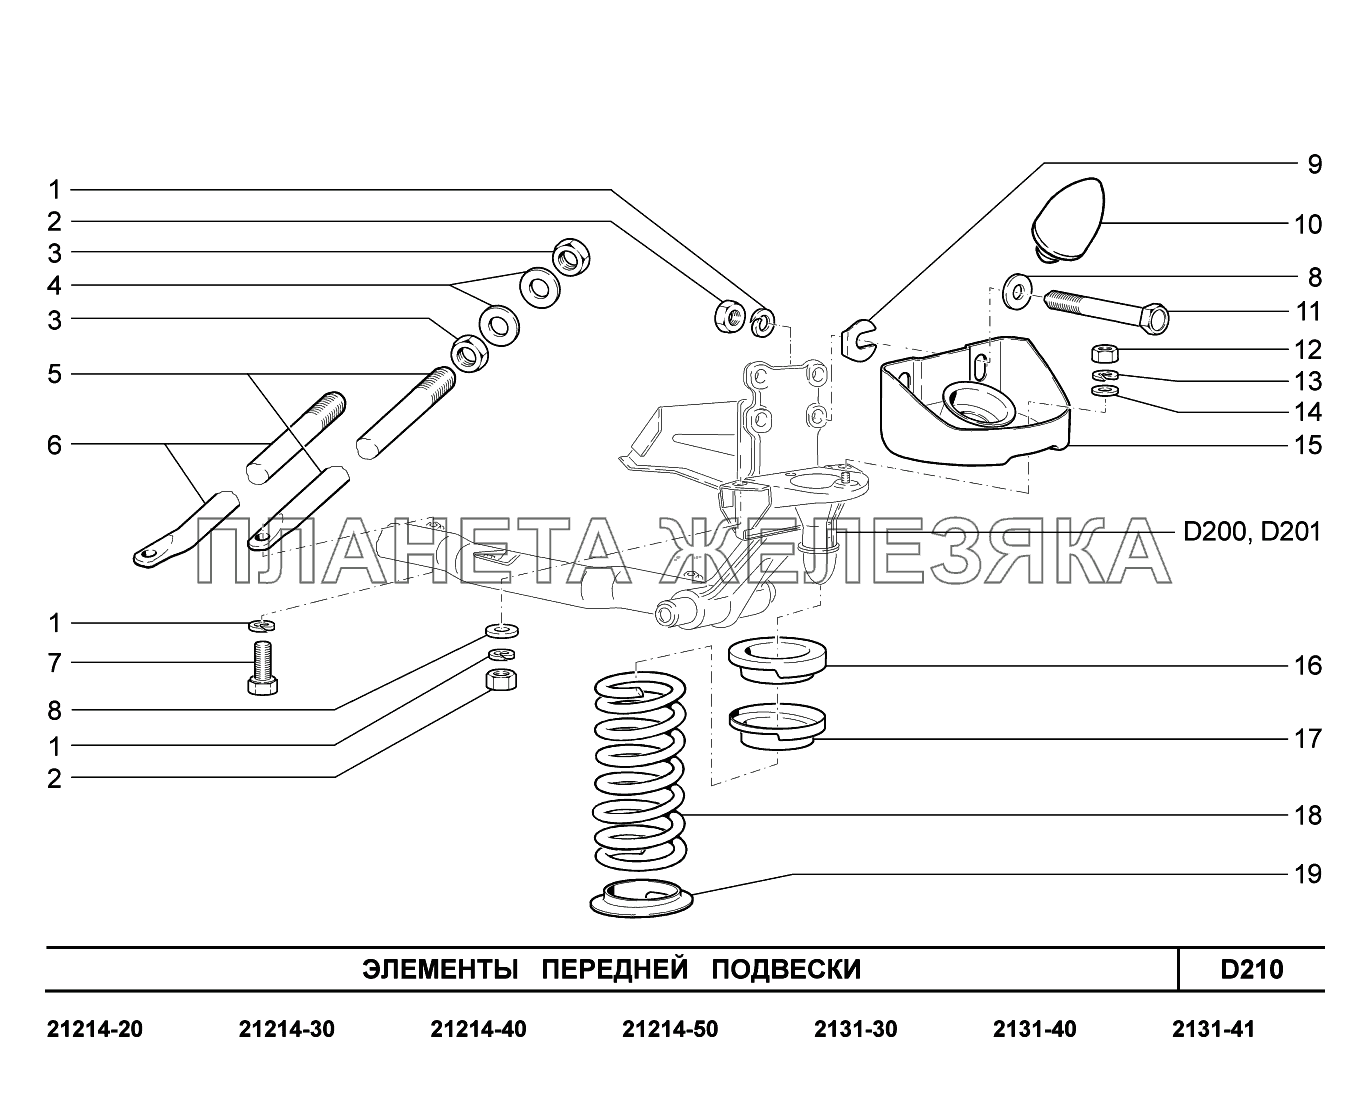 D210. Элементы передней подвески LADA 4x4